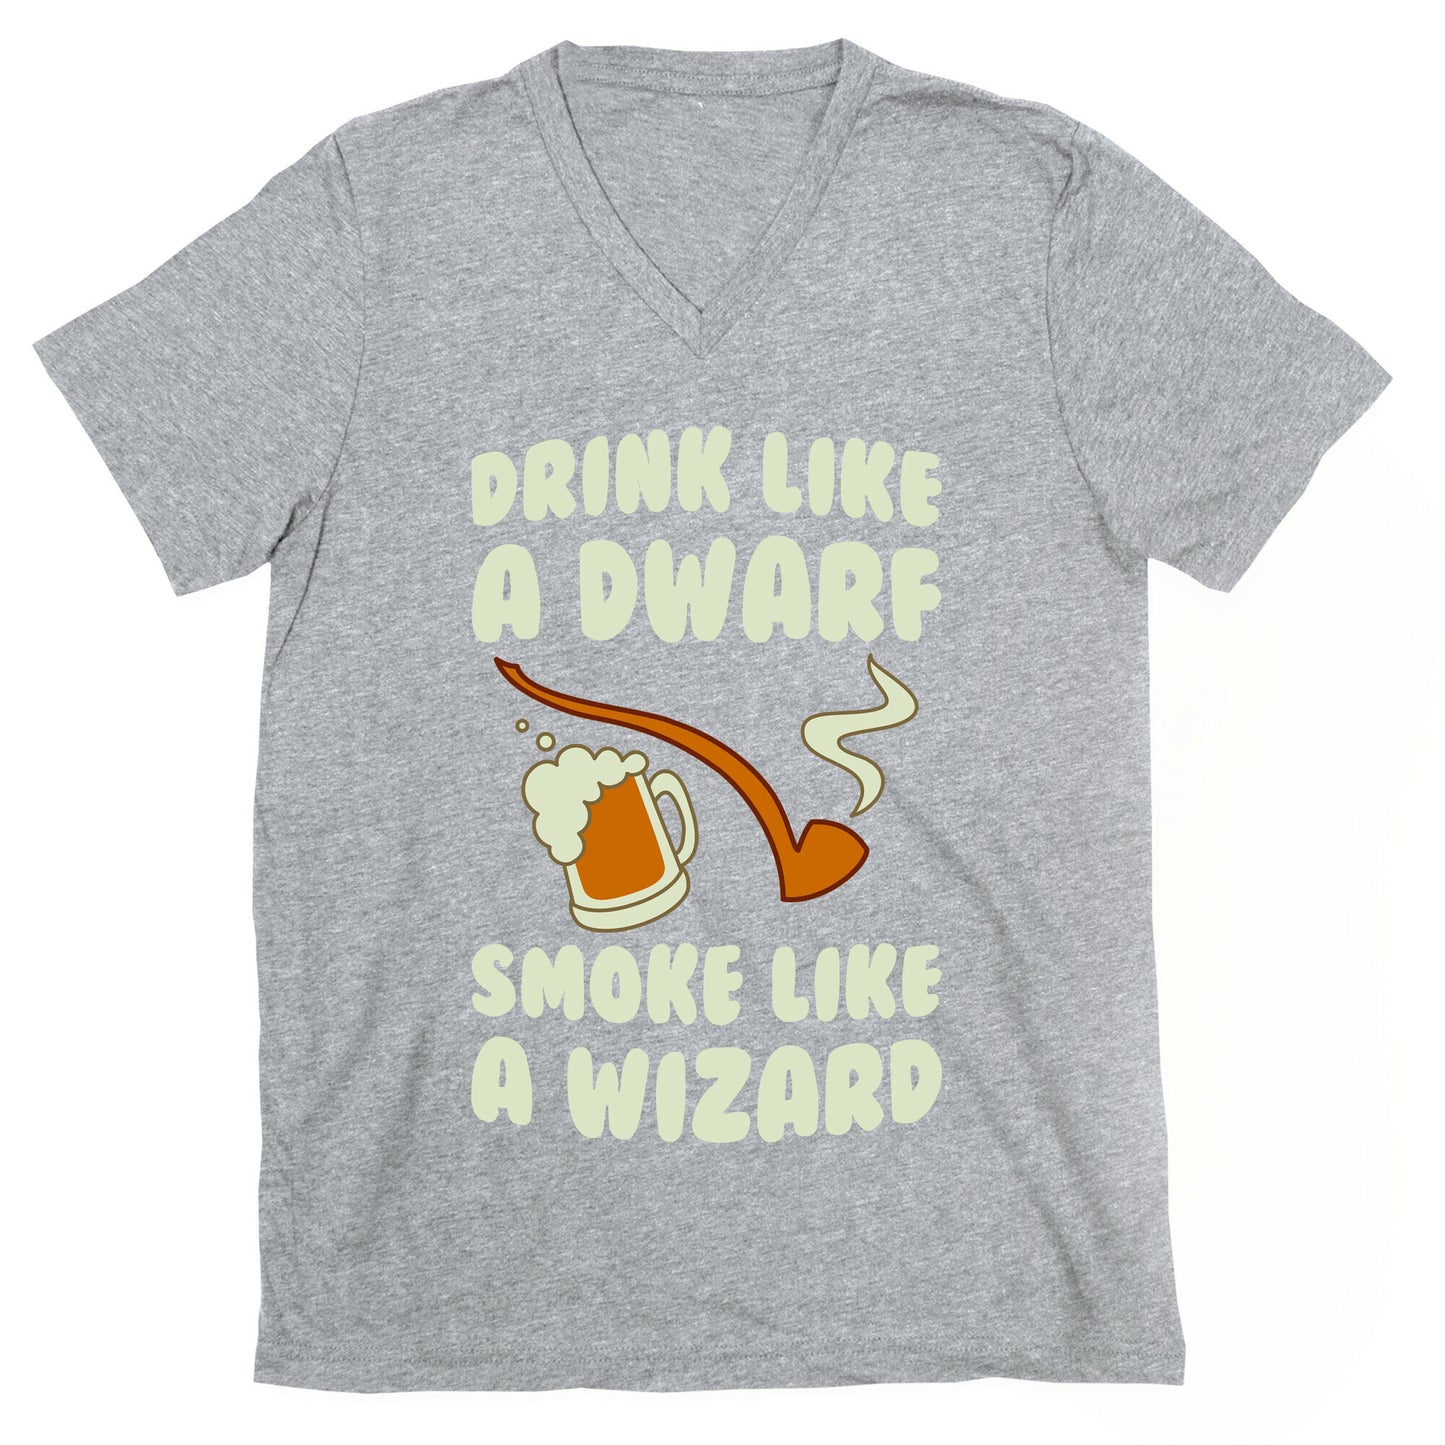 Drink Like A Dwarf, Smoke Like A Wizard V-Neck